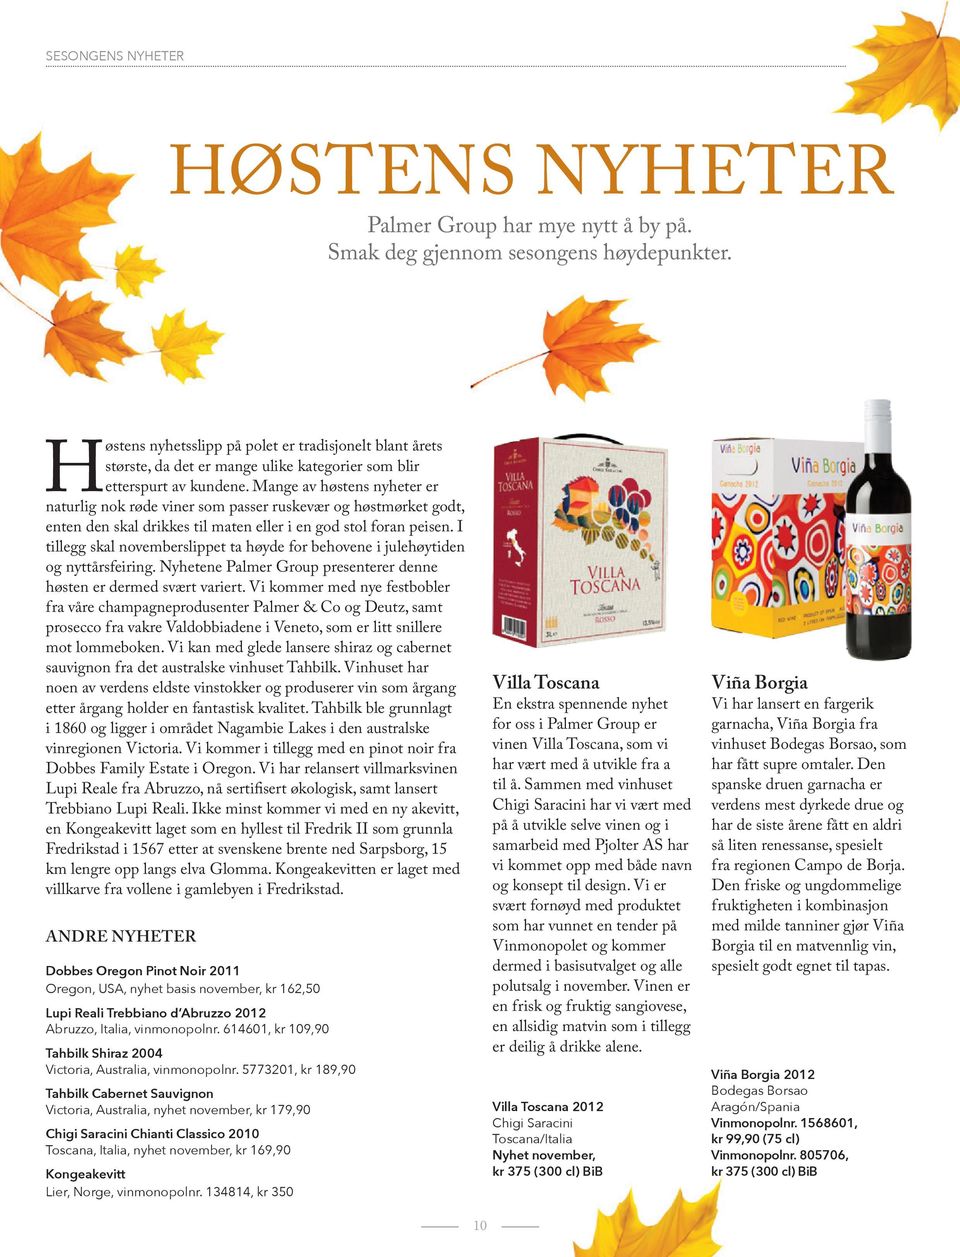 Mange av høstens nyheter er naturlig nok røde viner som passer ruskevær og høstmørket godt, enten den skal drikkes til maten eller i en god stol foran peisen.